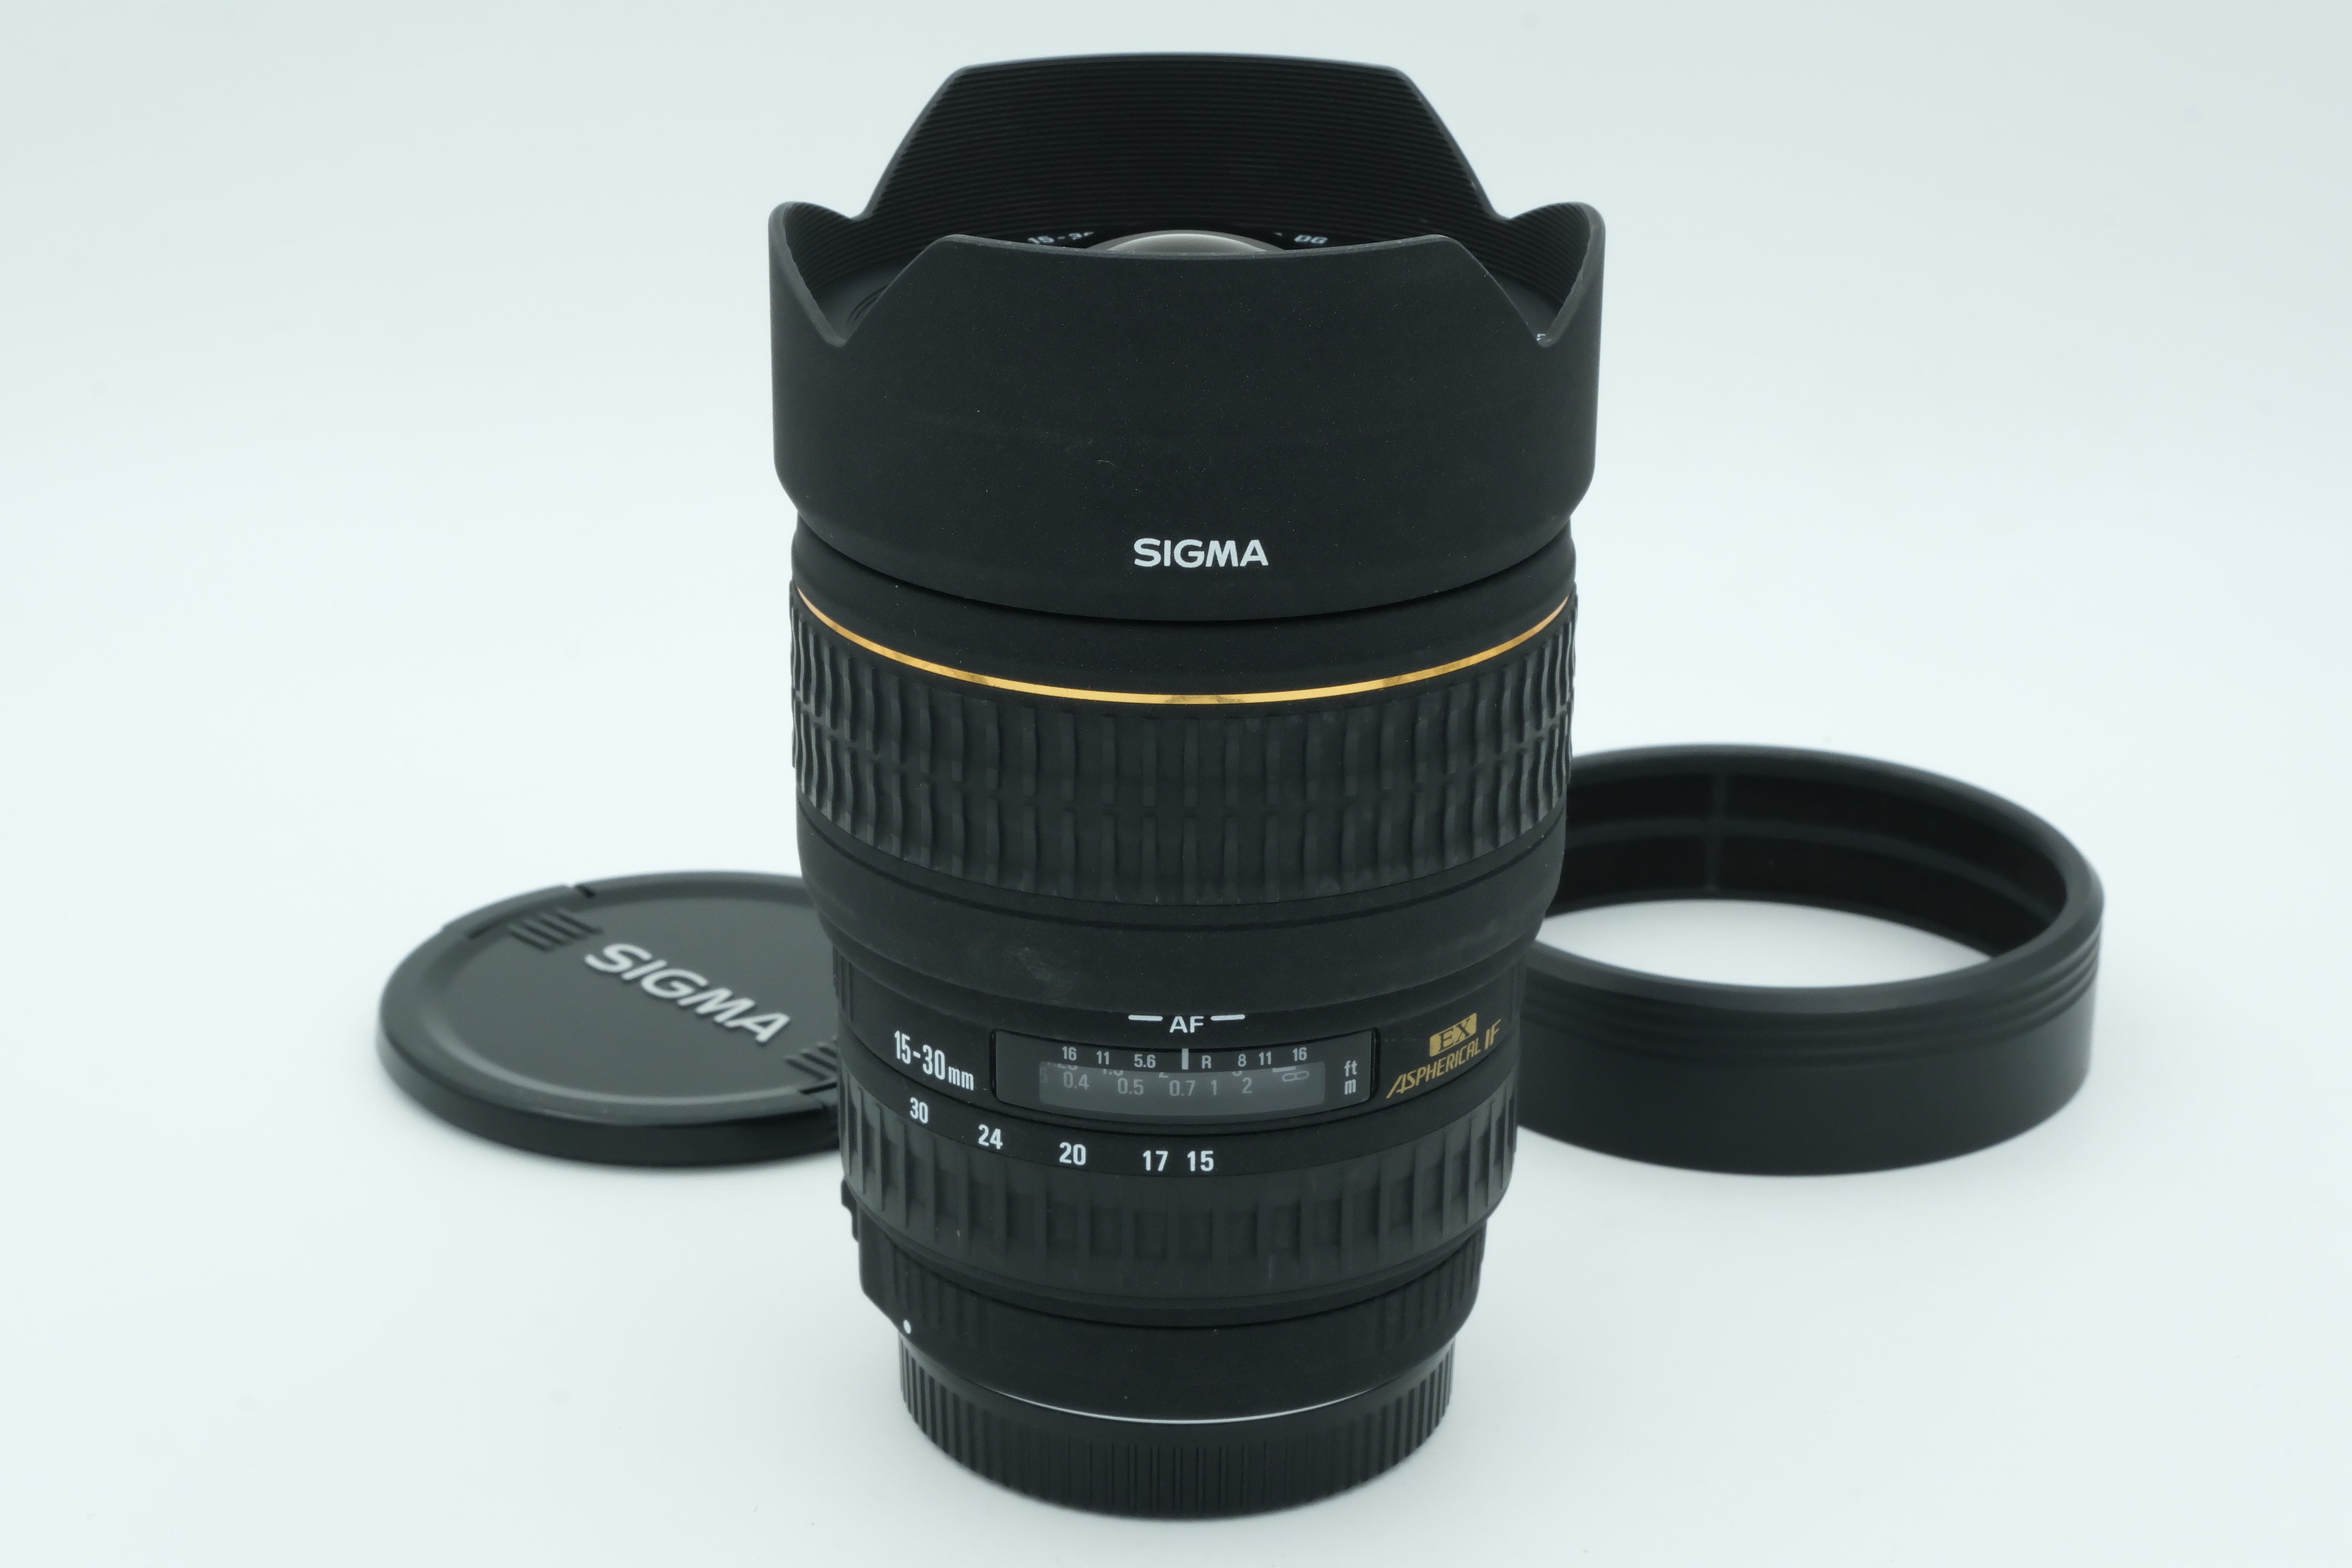 Sigma AF 15-30mm 1:3,5-4,5 DG passend für Vollformat, für Canon Bild 01